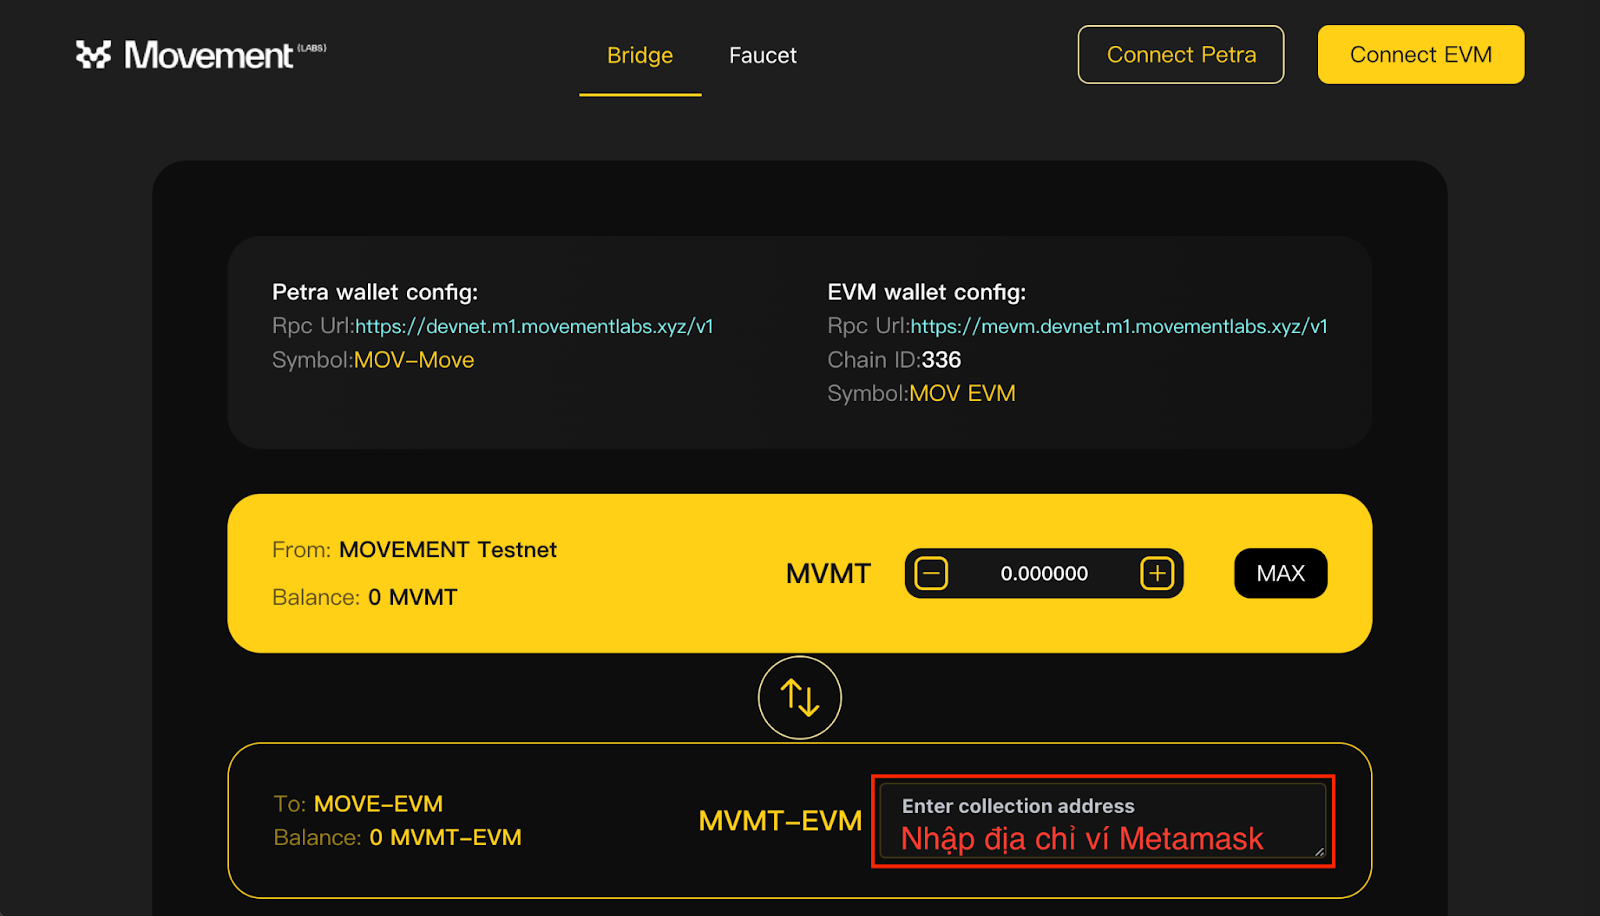 Tiến hành chuyển token MVMT từ Movement Testnet ở ví Aptos sang ví Metamask.